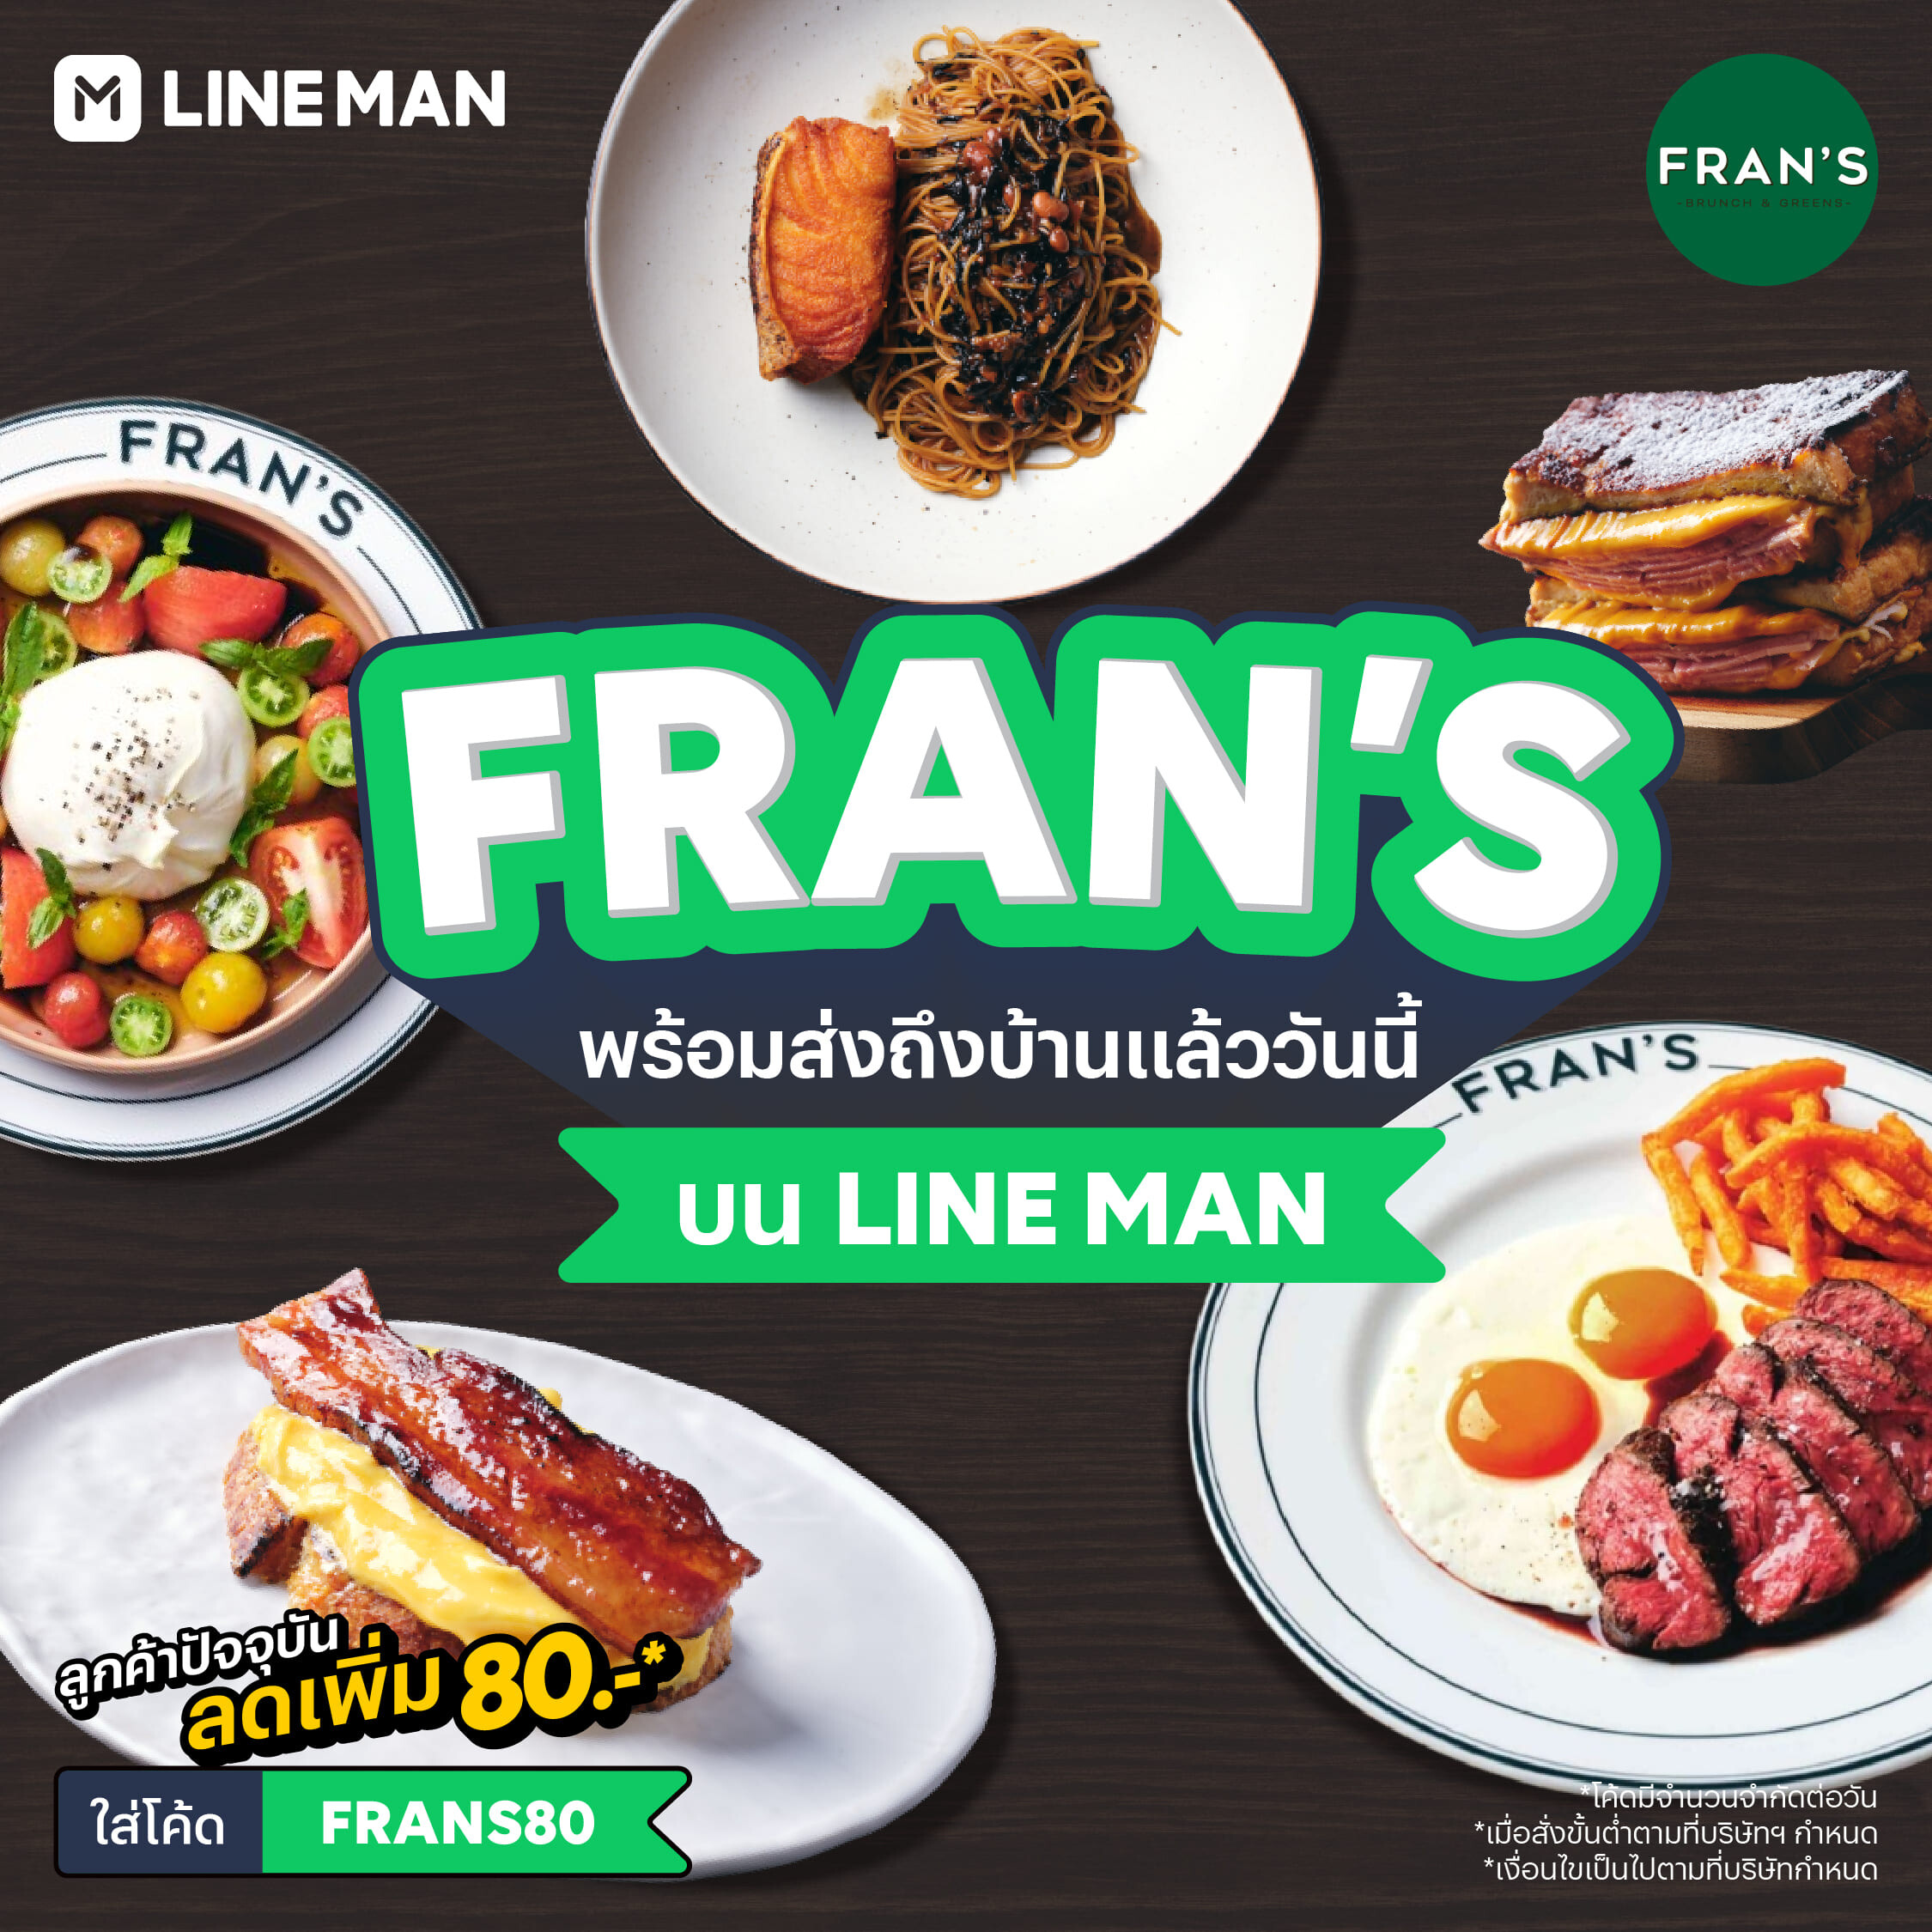 Fran's และ ?n C?m ?n C? เปิดเดลิเวอรีที่แรกบน LINE MAN